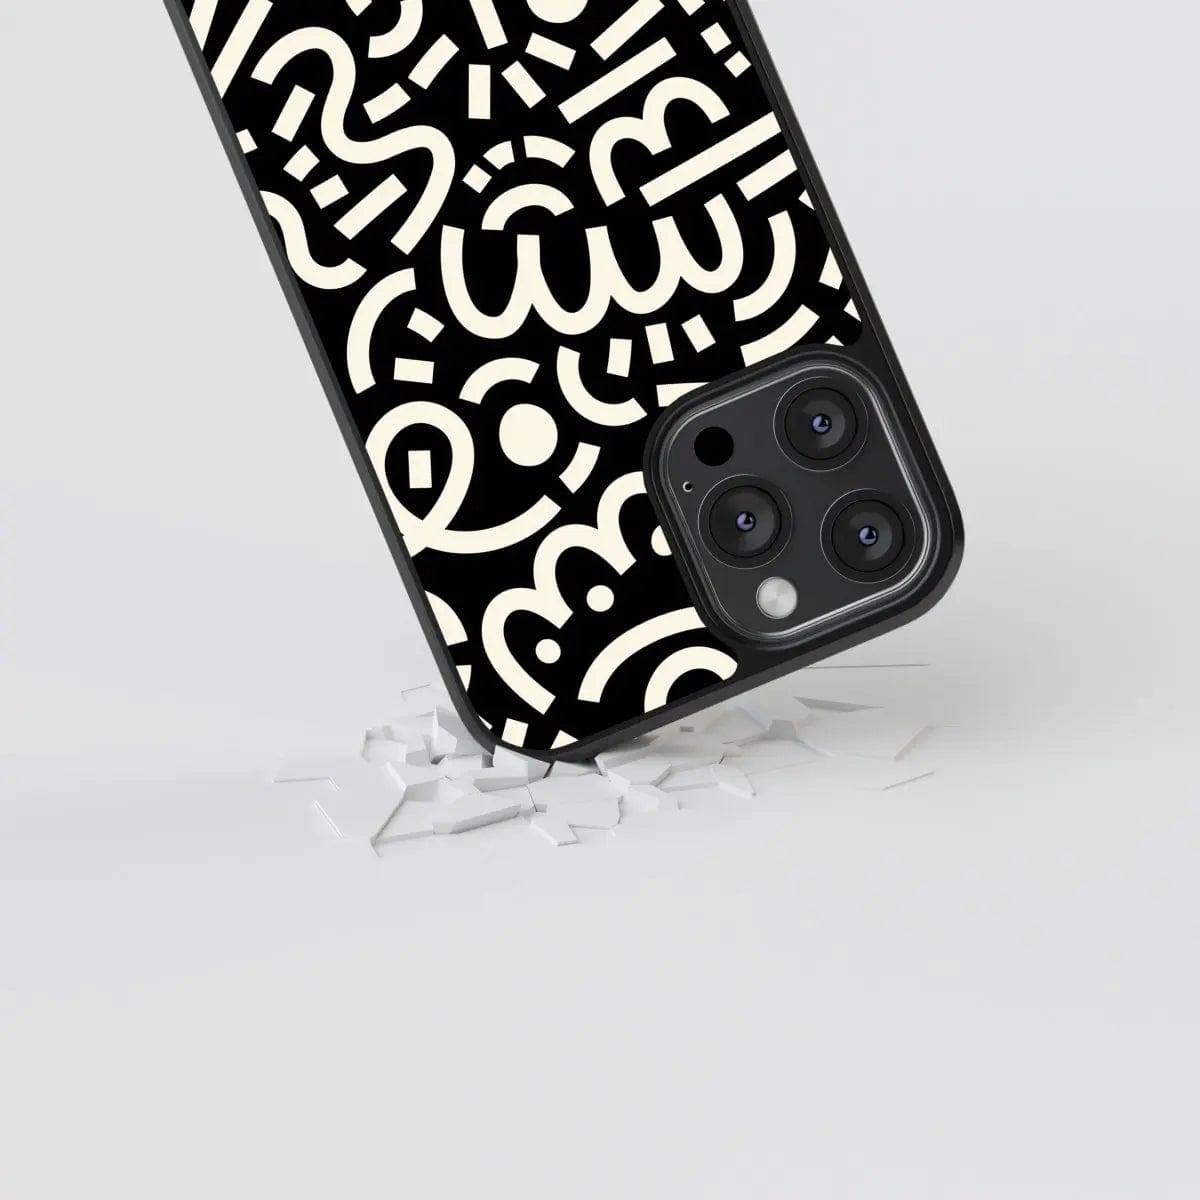 Phone case "Milk patterns" - Artcase